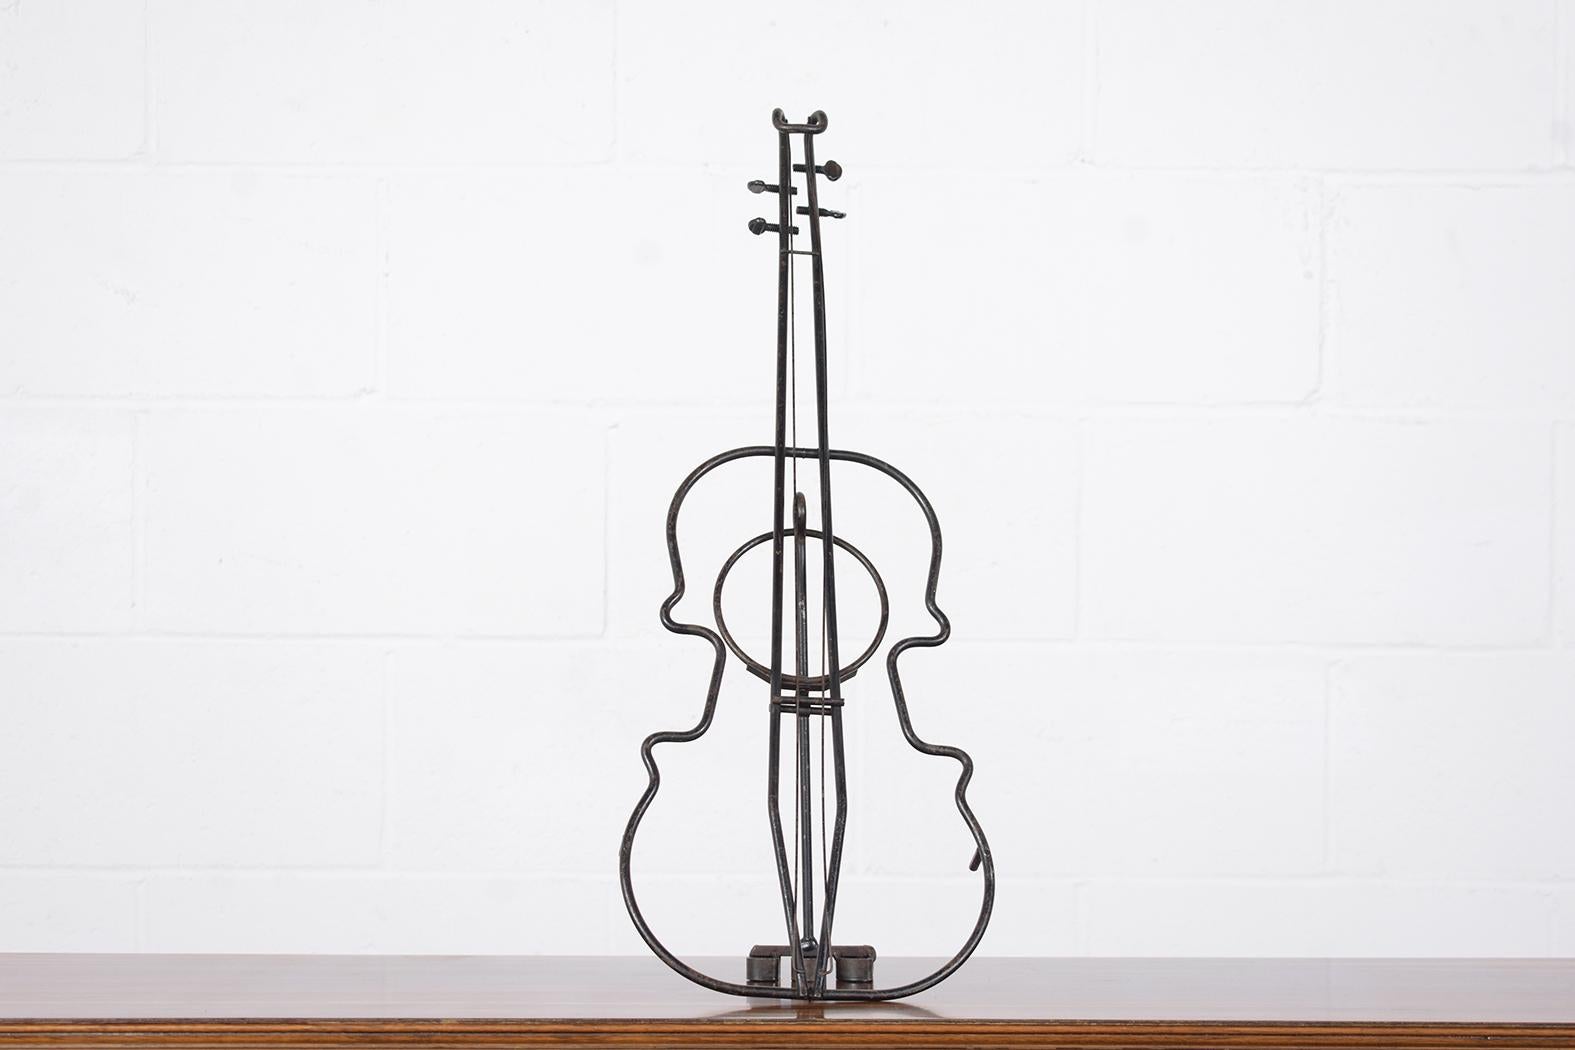 Cette extraordinaire sculpture française antique de violon est en bon état et est magnifiquement fabriquée à la main en fer forgé. Cette pièce est accrocheuse et présente des détails incroyablement forgés et travaillés sur un piédestal ; le violon